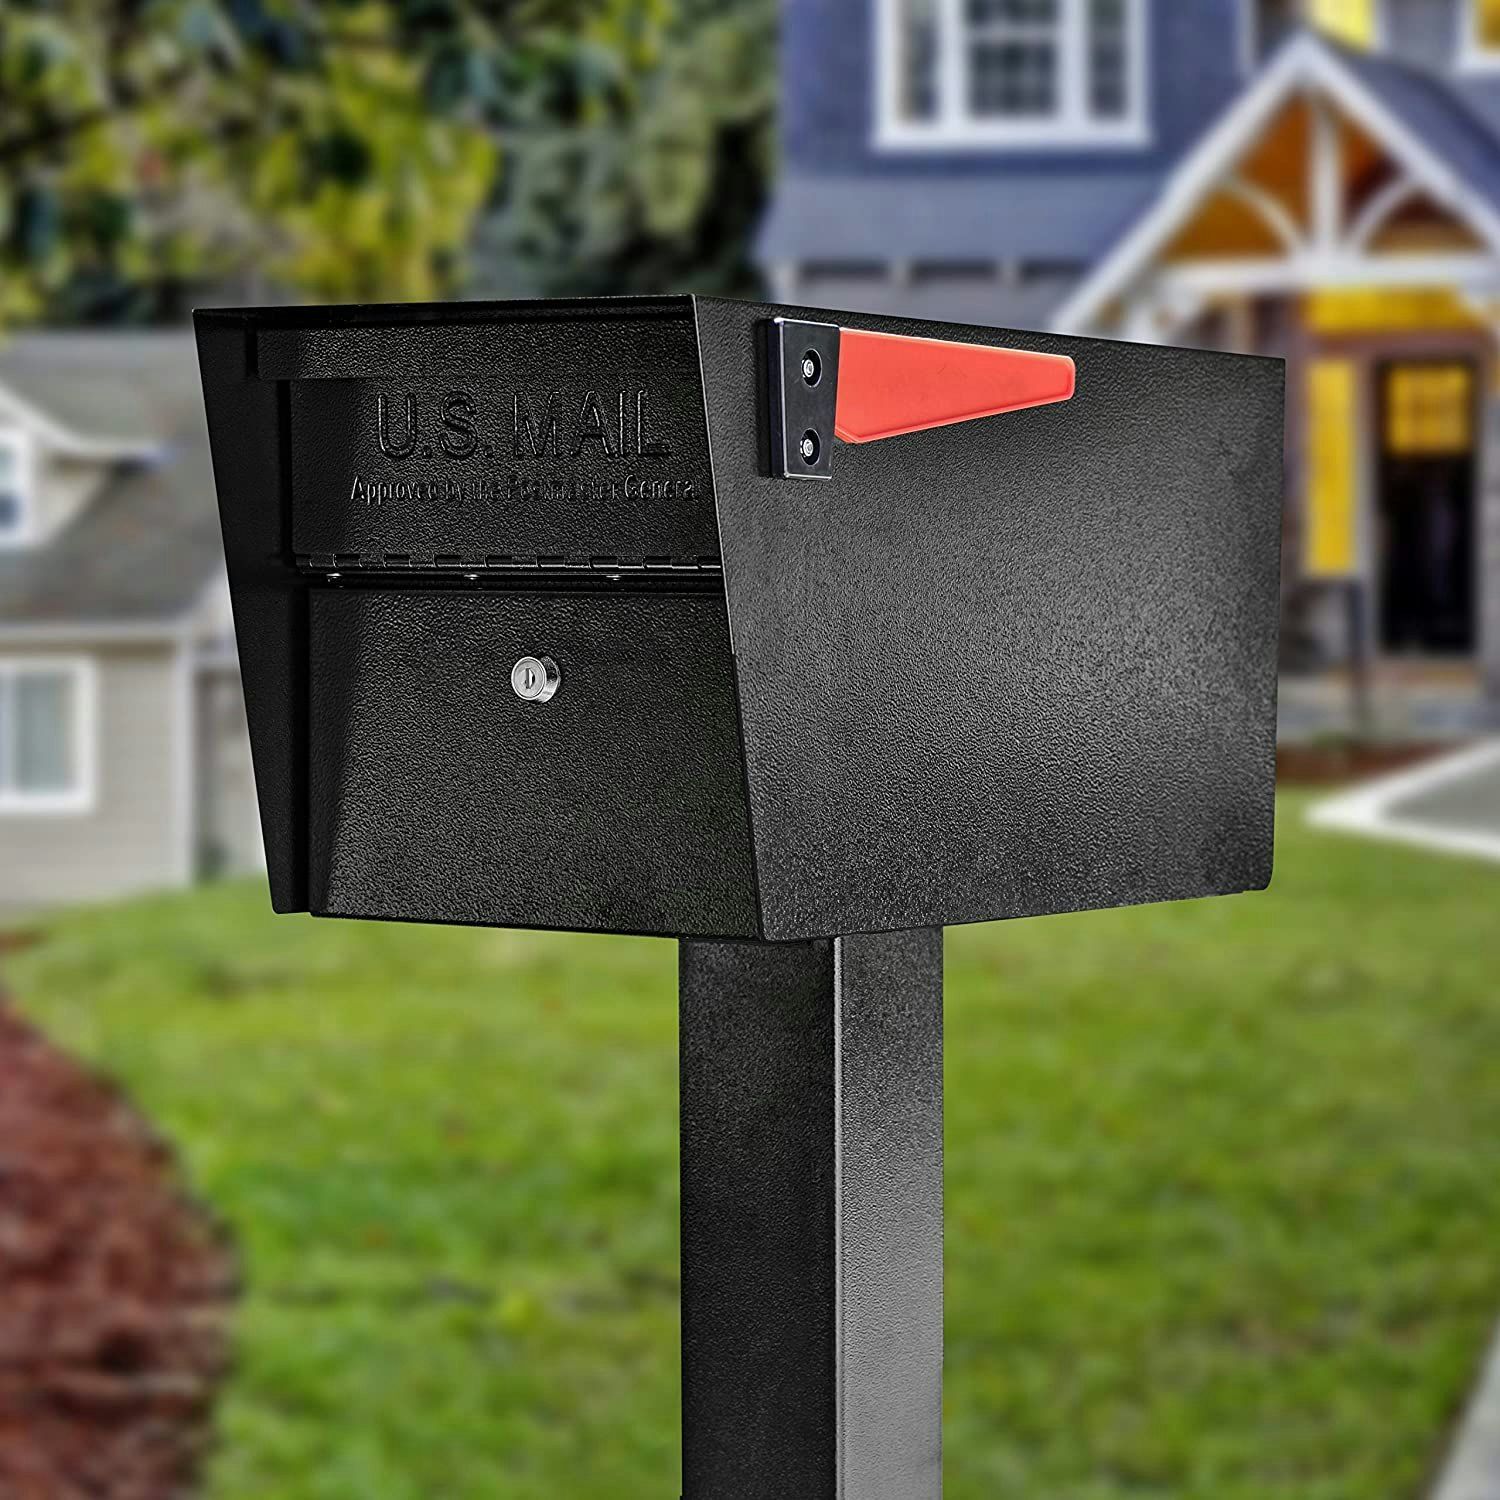 mailbox key